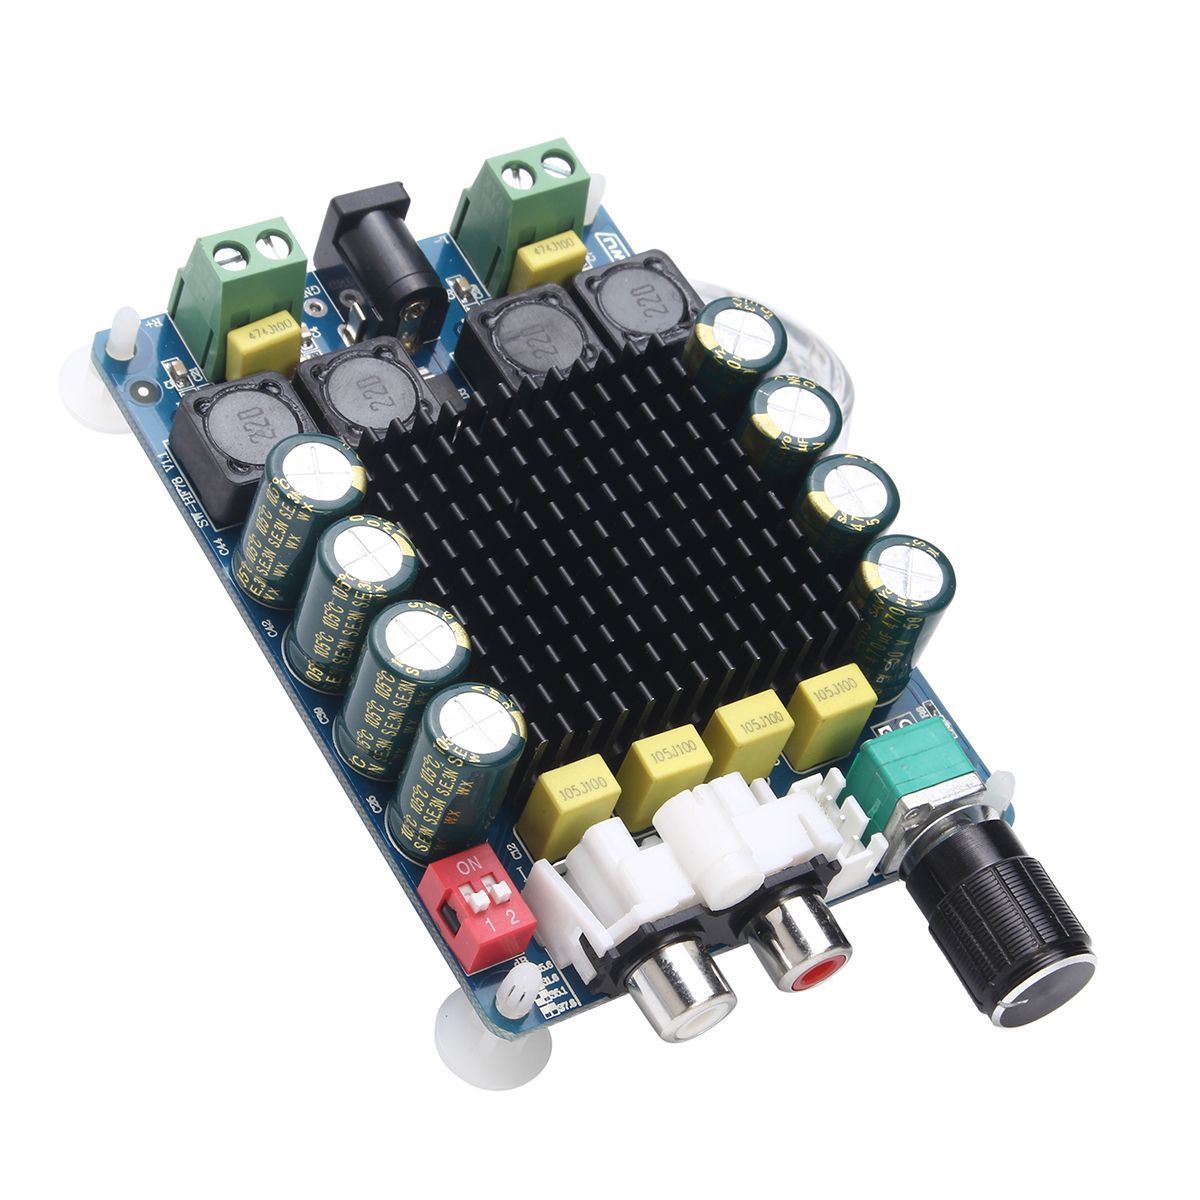 TDA7498-2X100W-Power-Amplifier-Board-High-Power-Digital-Amplifier-Board-Two-Channel-Stereo-1562124